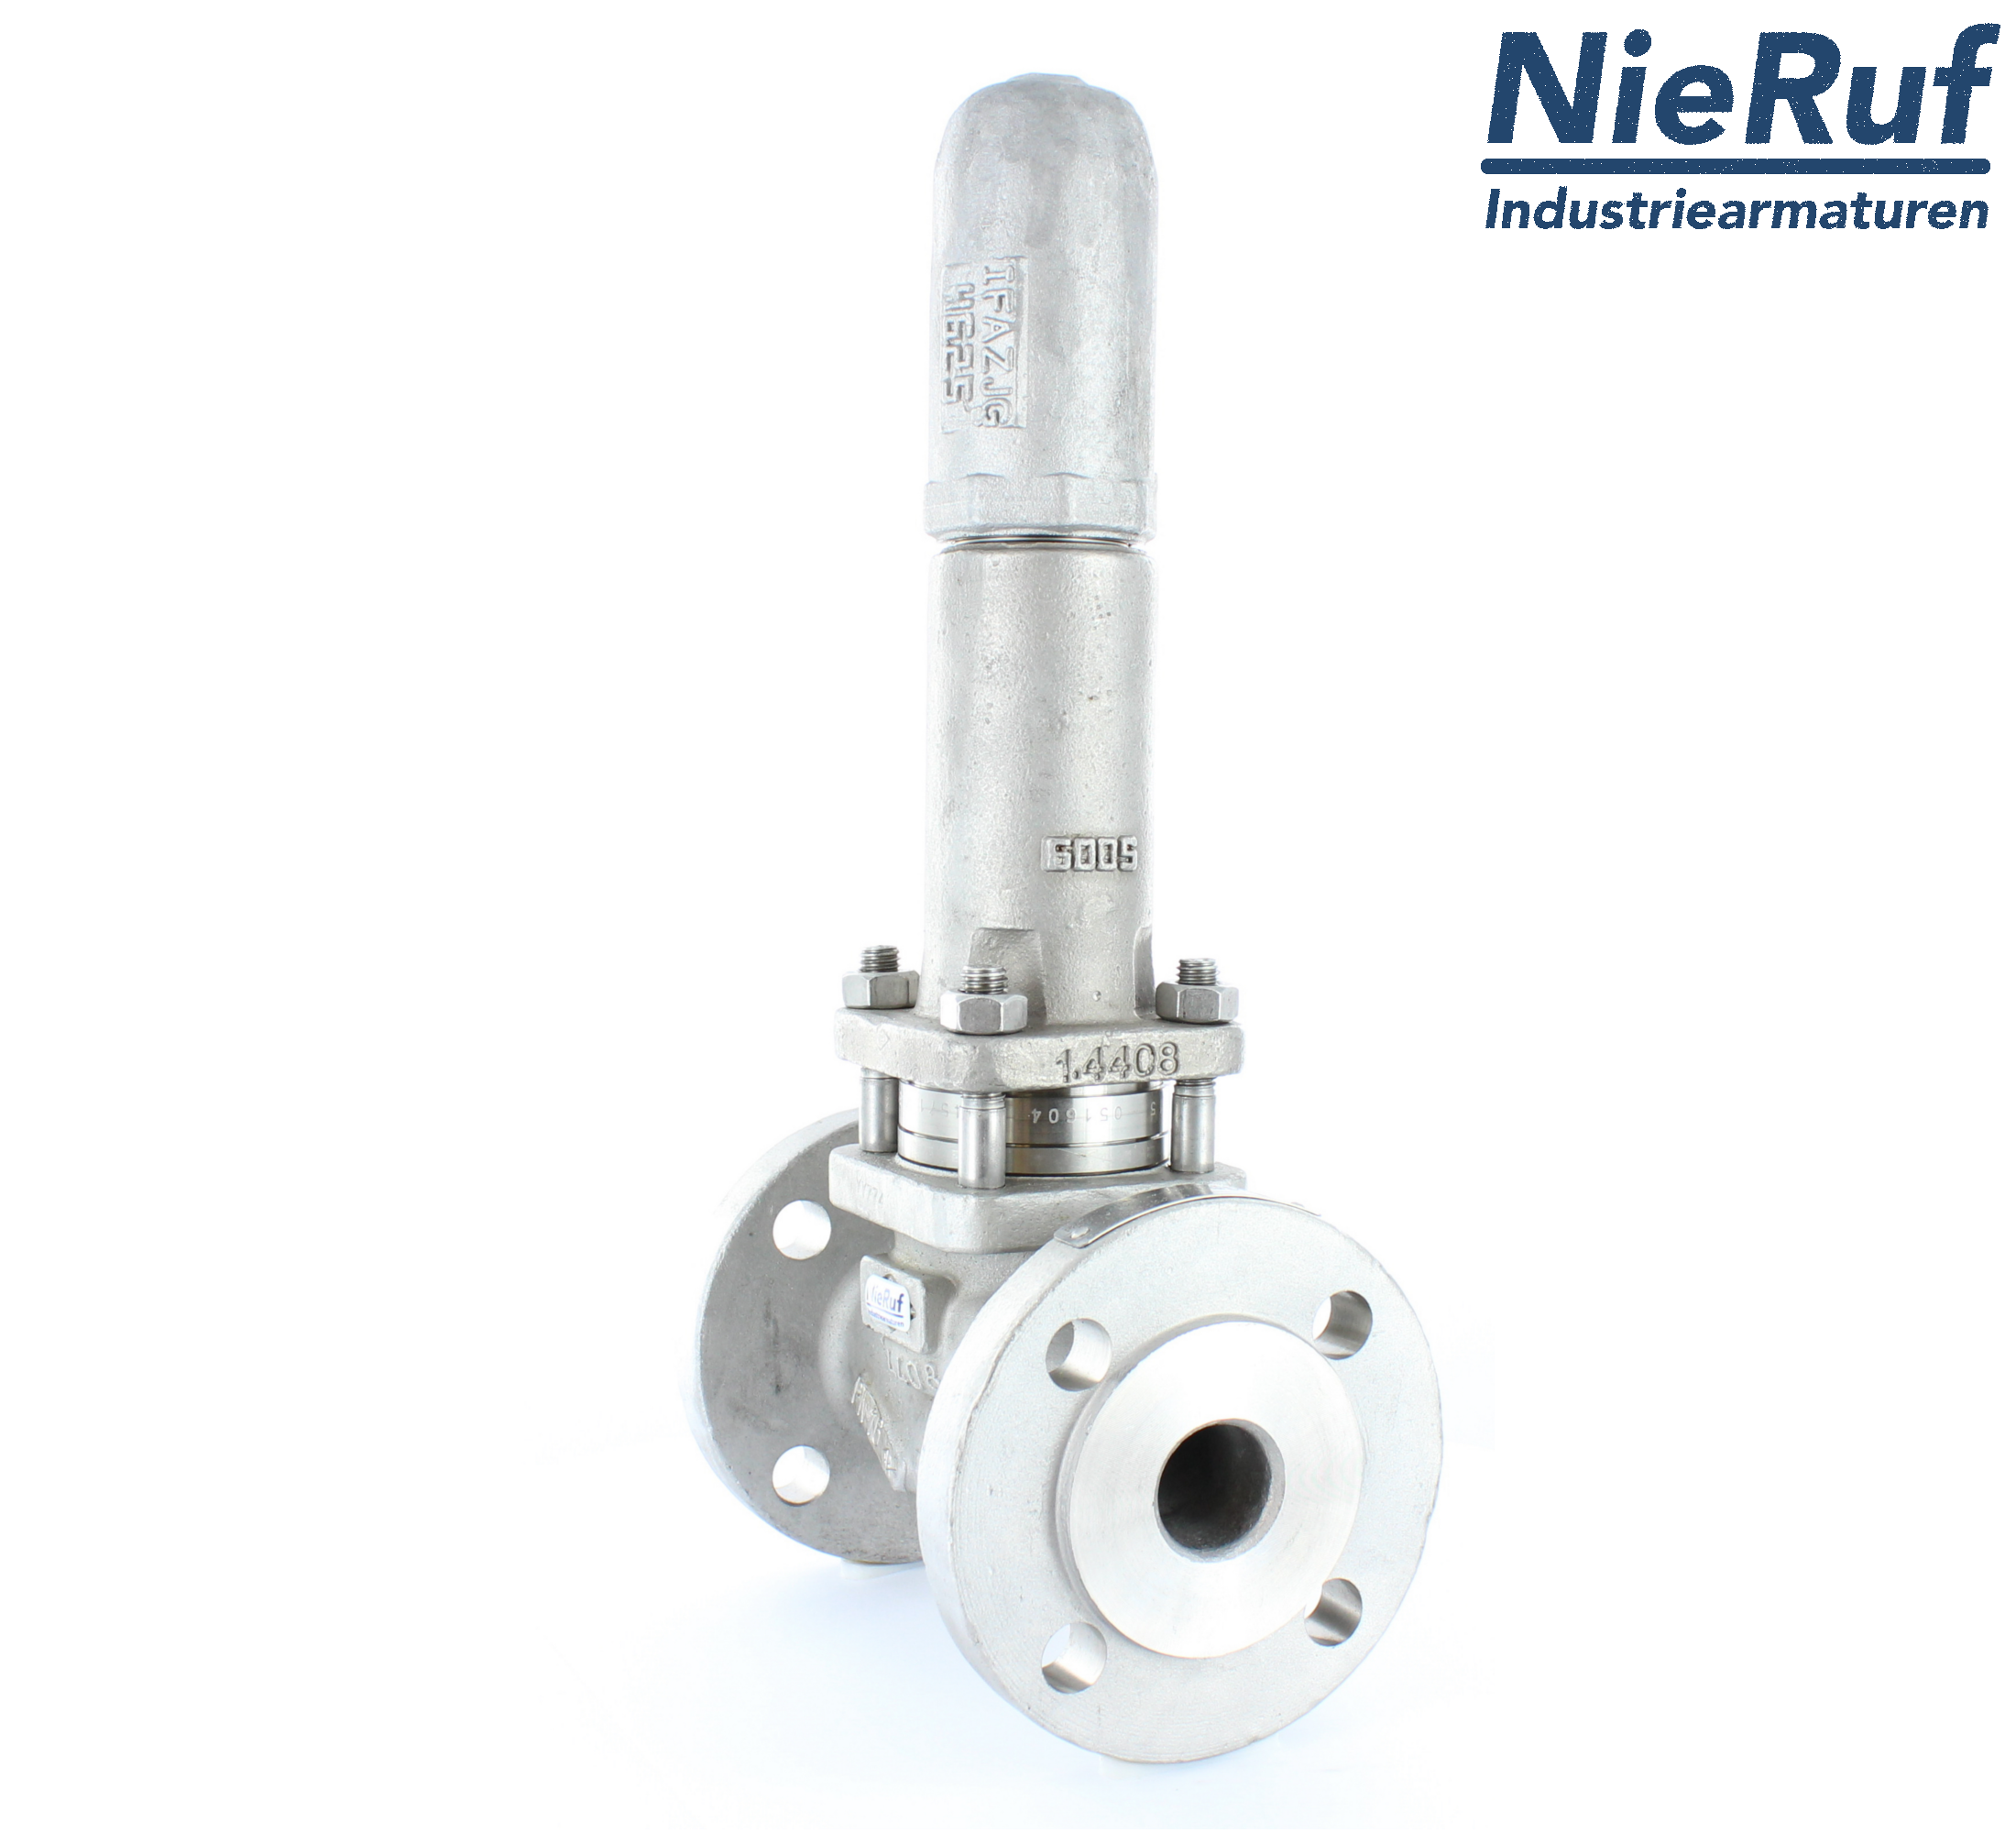 piston overflow valve DN 15 UV13 cast iron 1.0619+N 1,0 - 3,0 bar